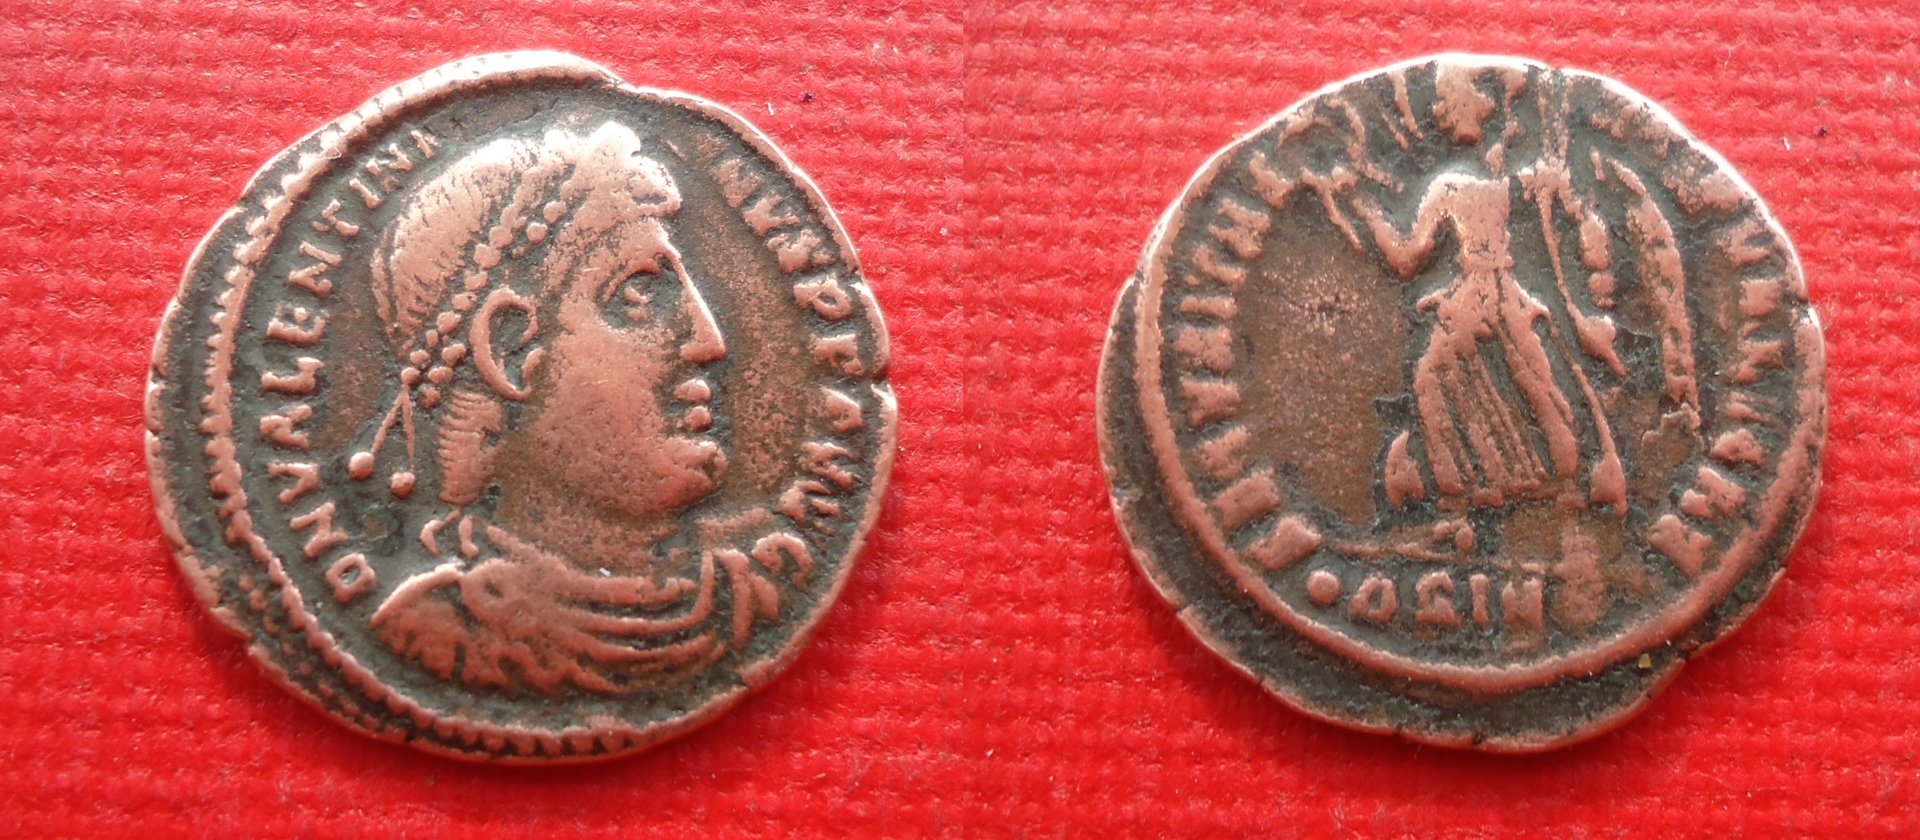 Valentinian AE Nov 2018 (1).JPG